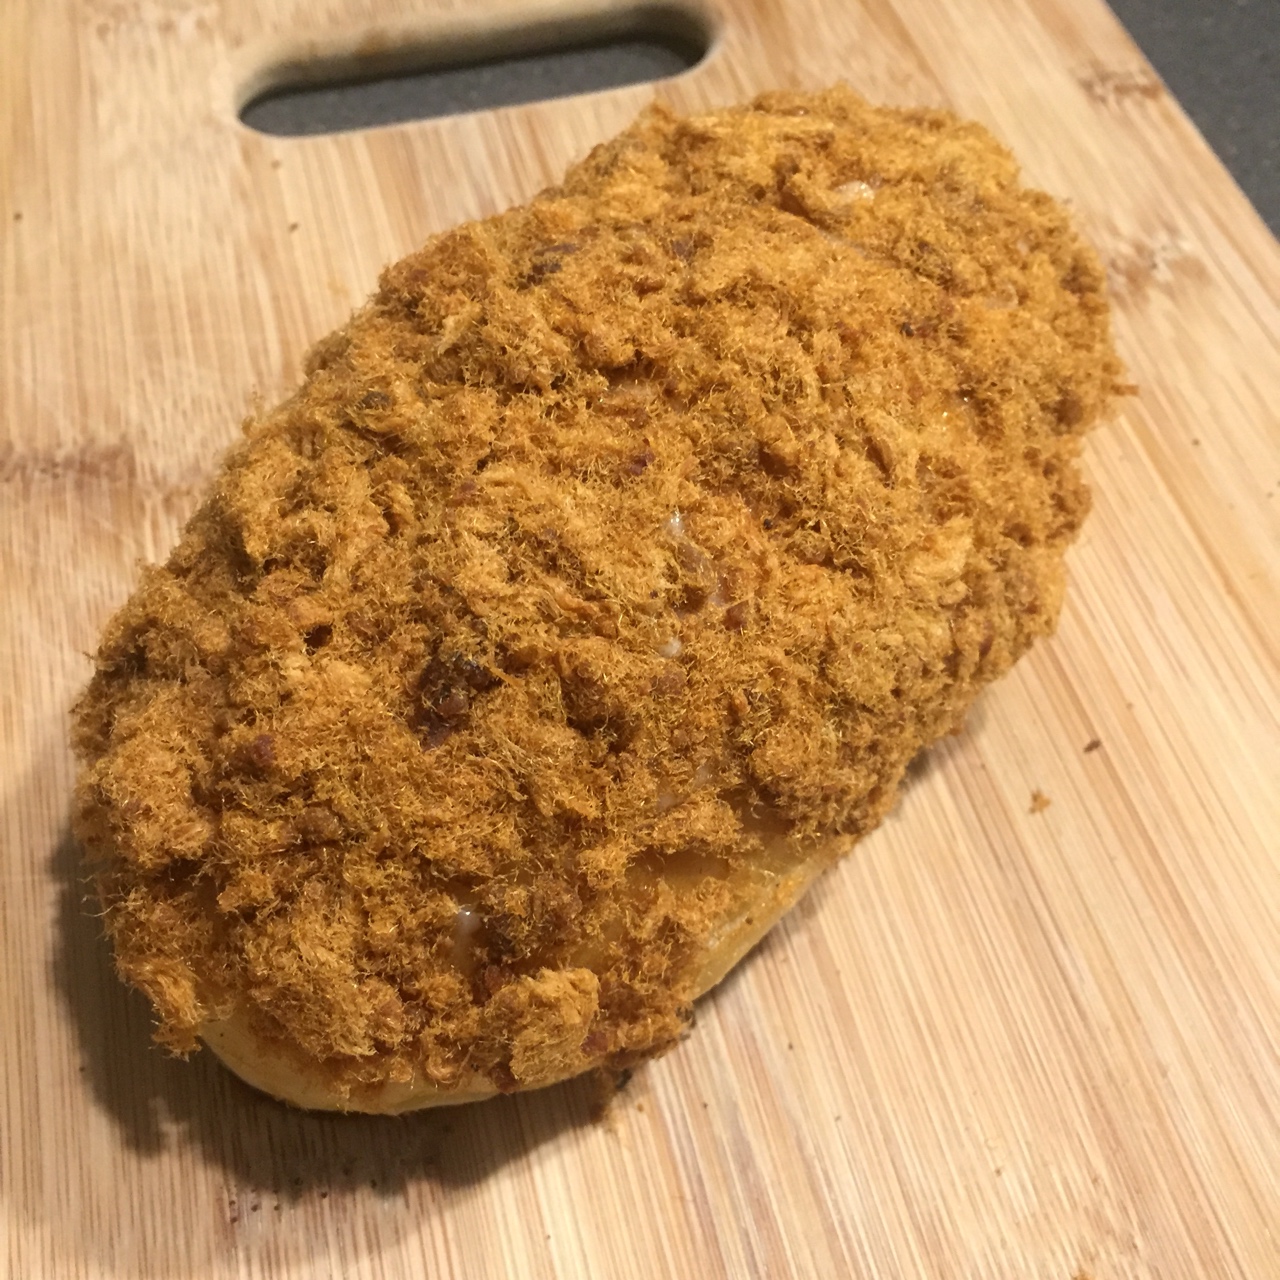 肉松沙拉酱面包（65度汤种）